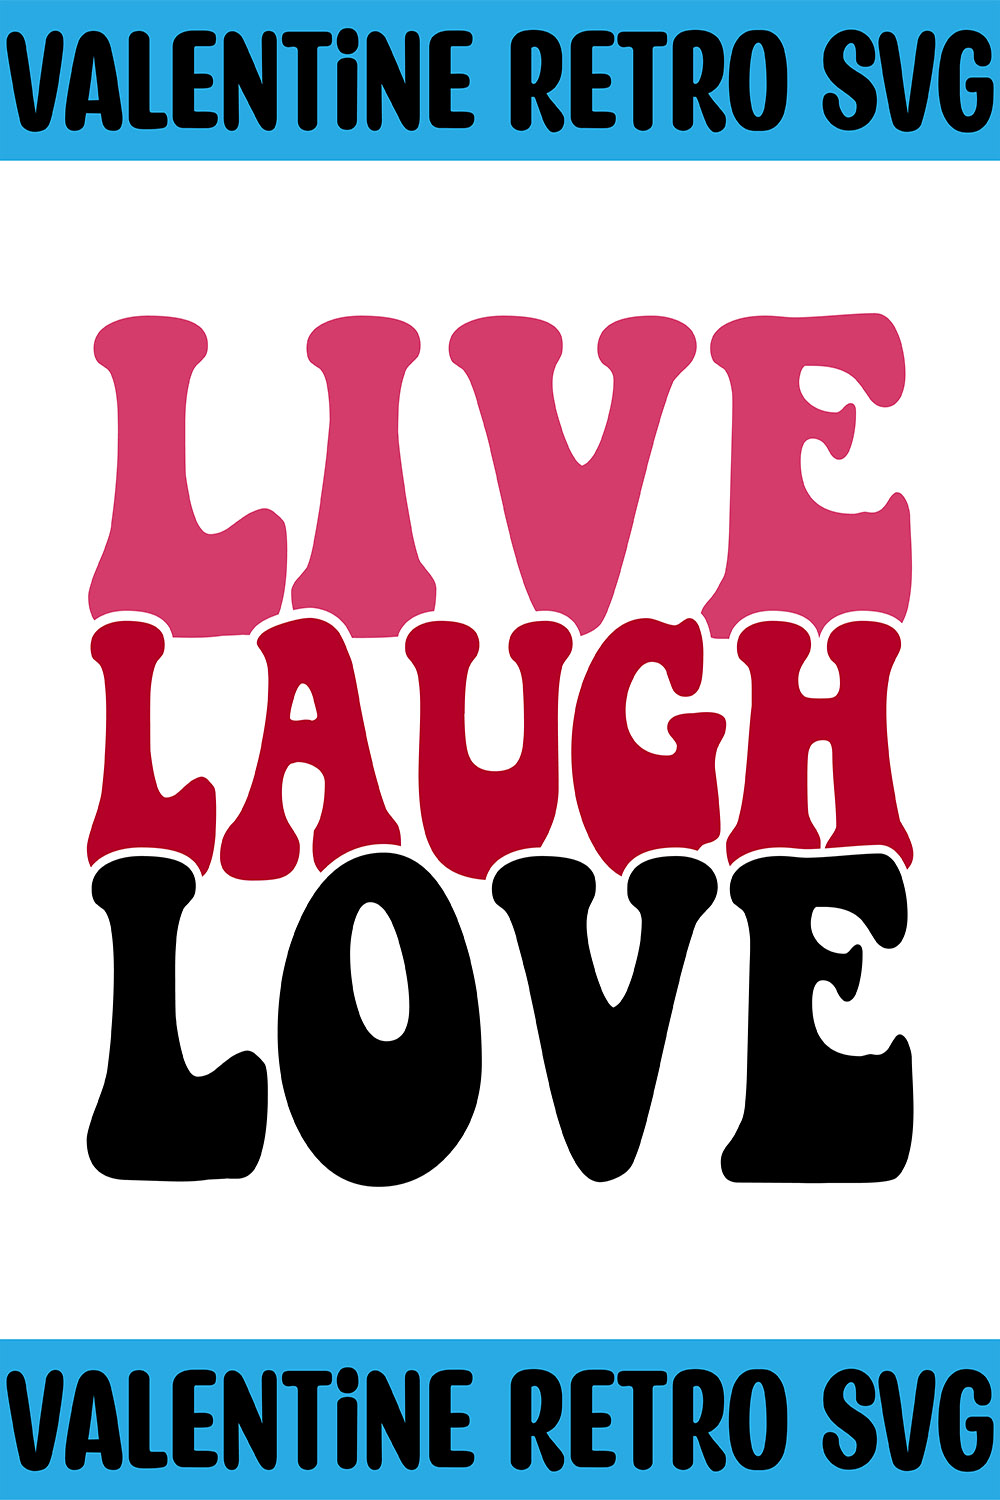 Live Laugh Love Retro SVG pinterest preview image.